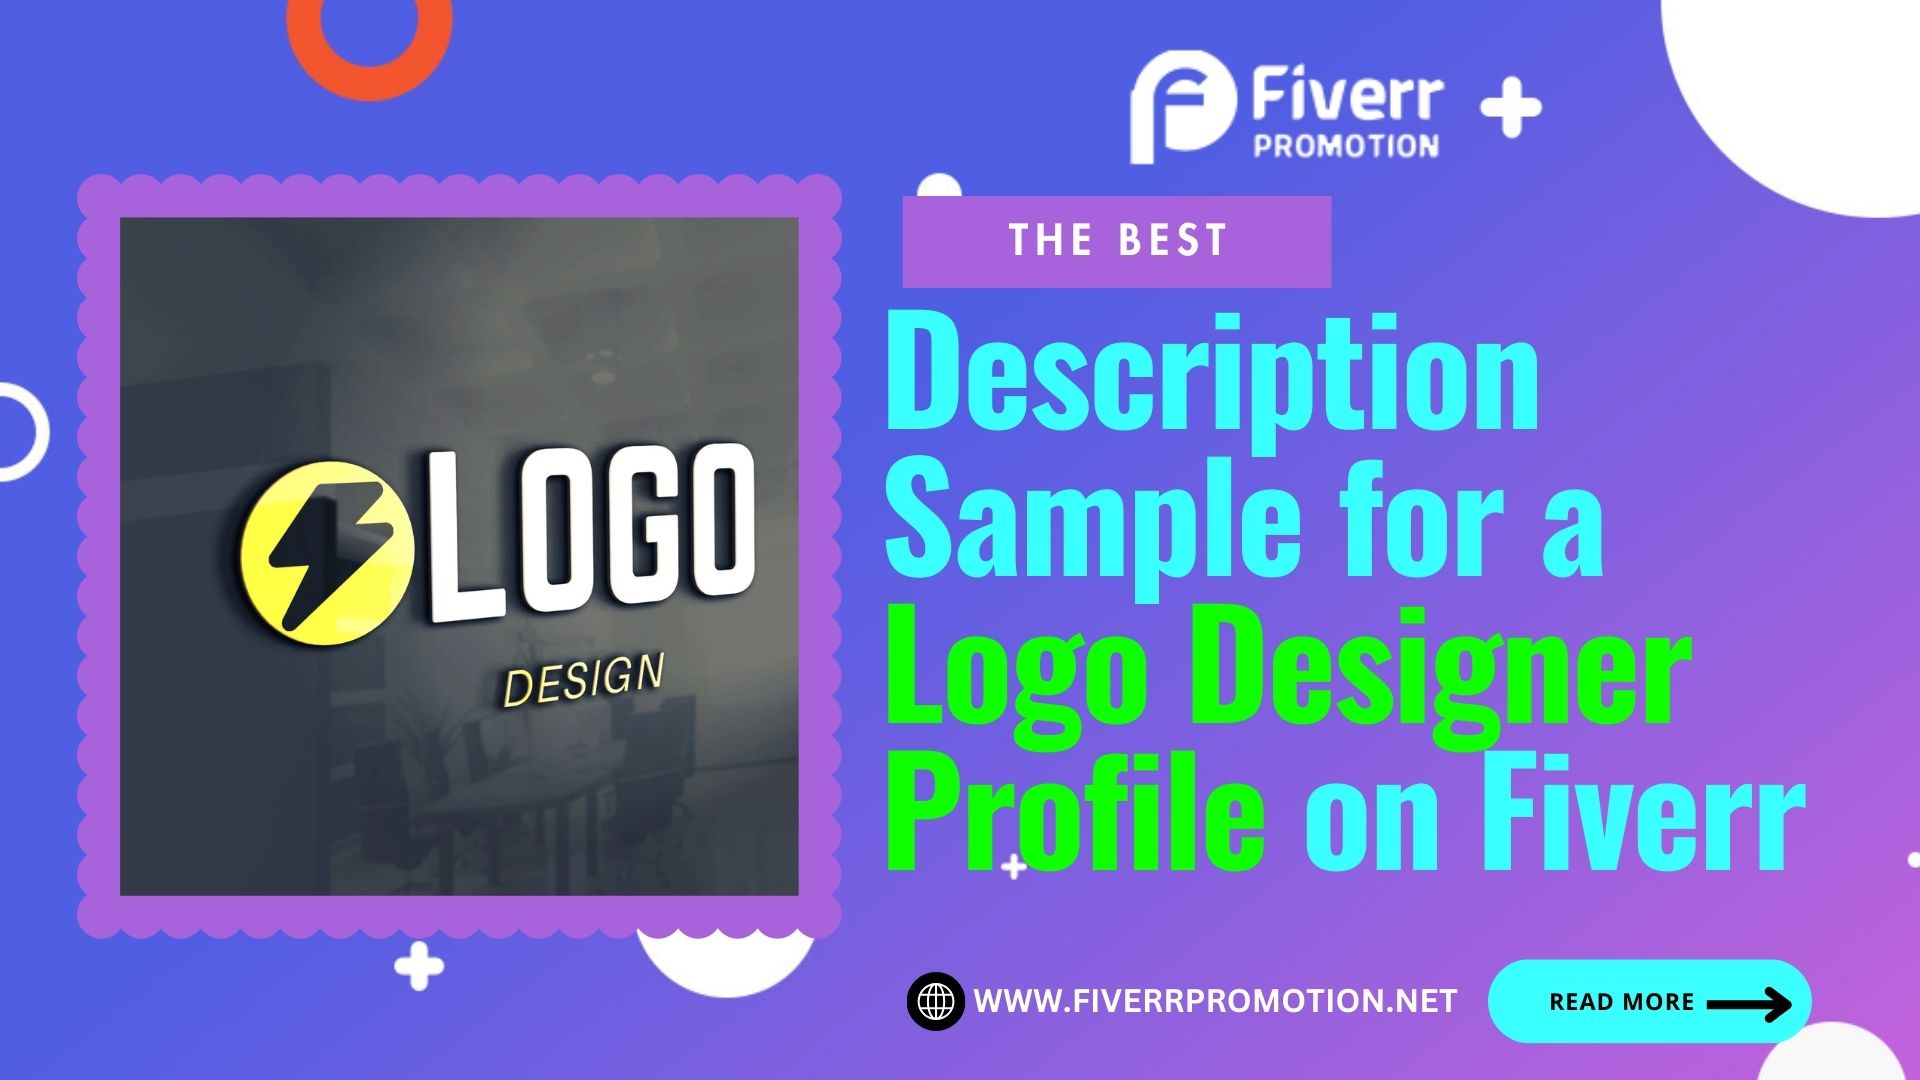 The Best Description Sample for a Logo Designer Profile on Fiverr